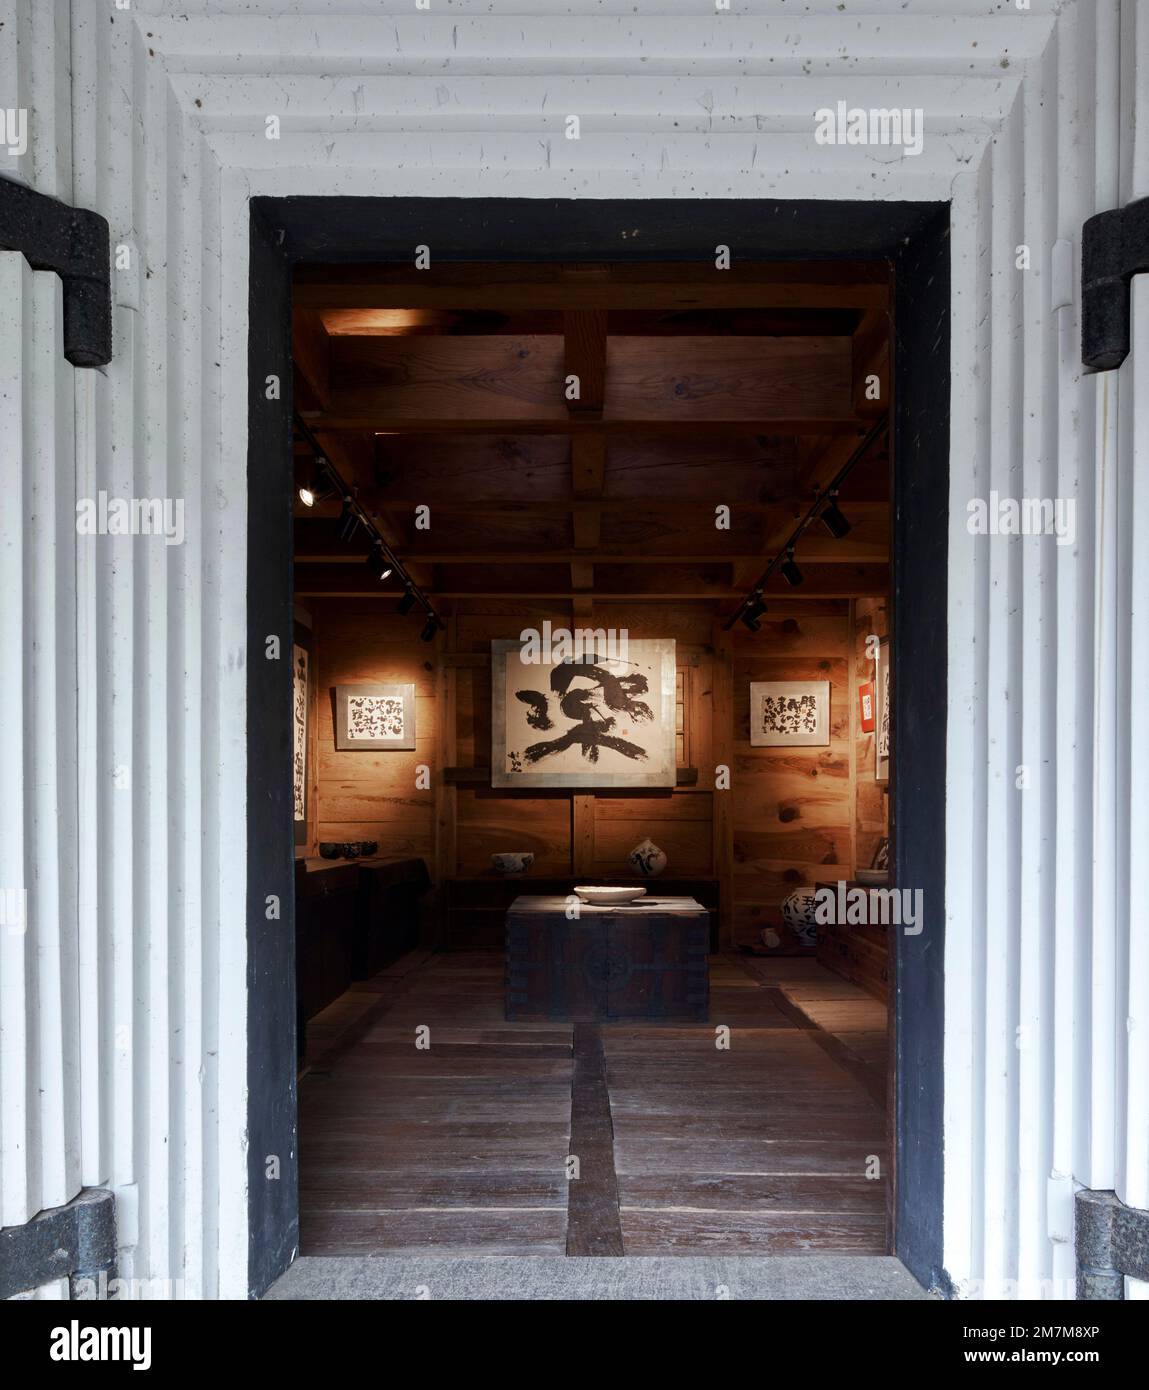 Galeriebereich von außen. Kura-Galerie für Tokiko Kato, Kamogawa, Japan. Architekt: Atelier Bow Wow, 2022. Stockfoto